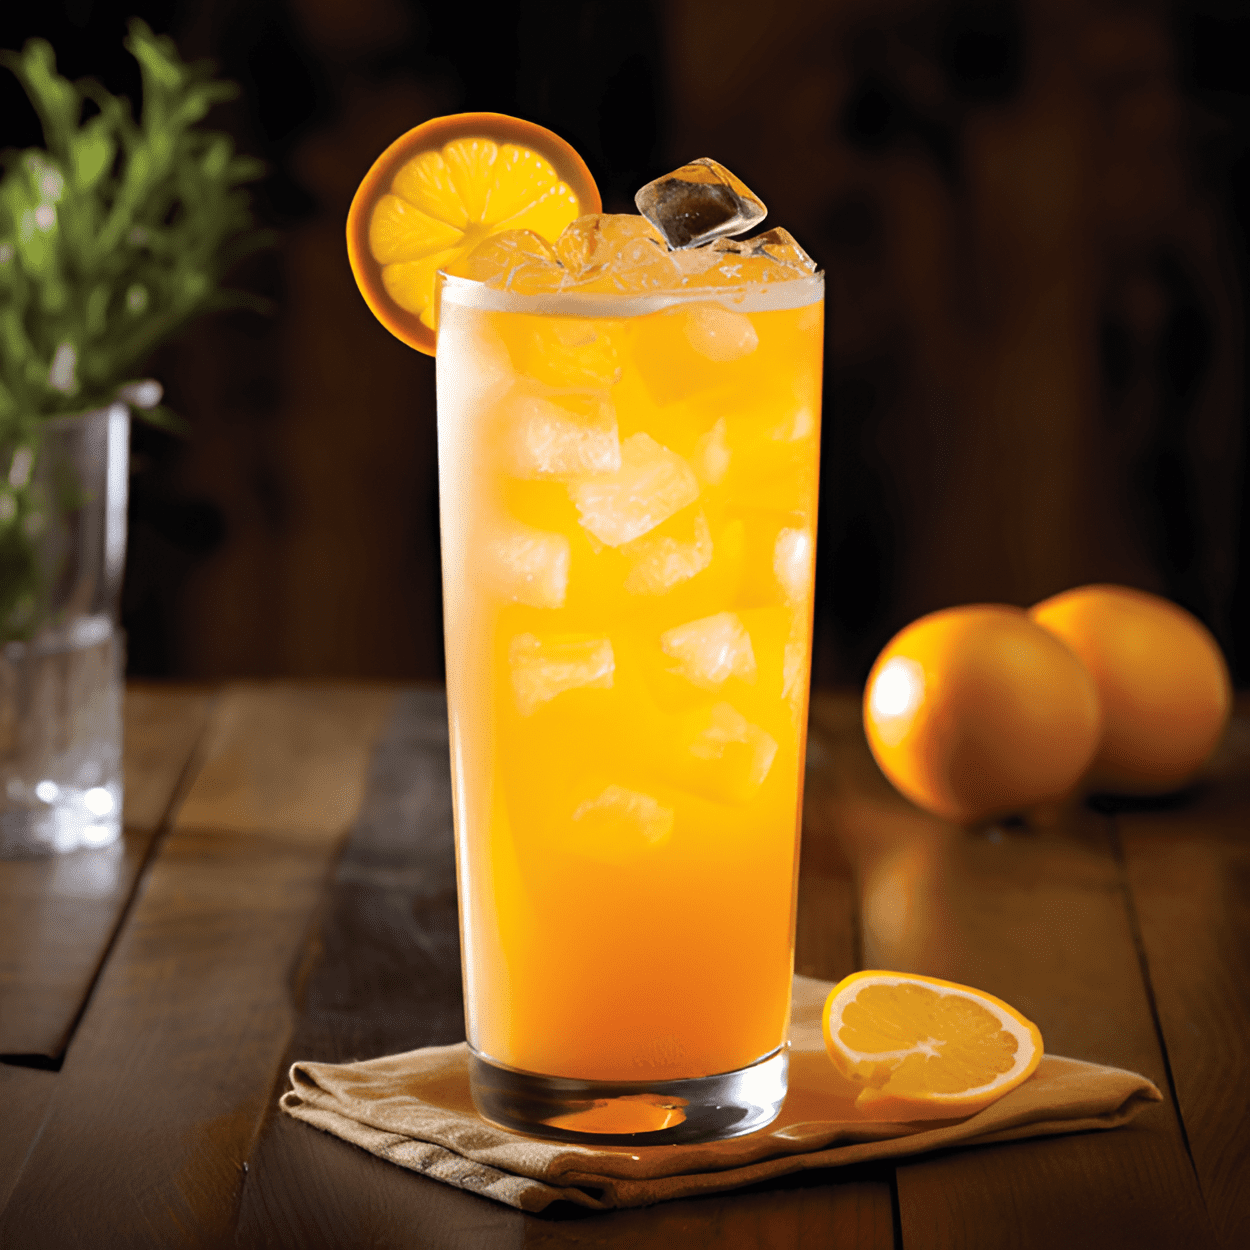 Naranja Nedicks Cóctel Receta - El cóctel Naranja Nedicks es una deliciosa mezcla de dulce y ácido, con un toque de amargura del alcohol. El jugo de naranja proporciona un sabor fresco y cítrico, mientras que el jarabe de azúcar añade un toque de dulzura para equilibrar los sabores.